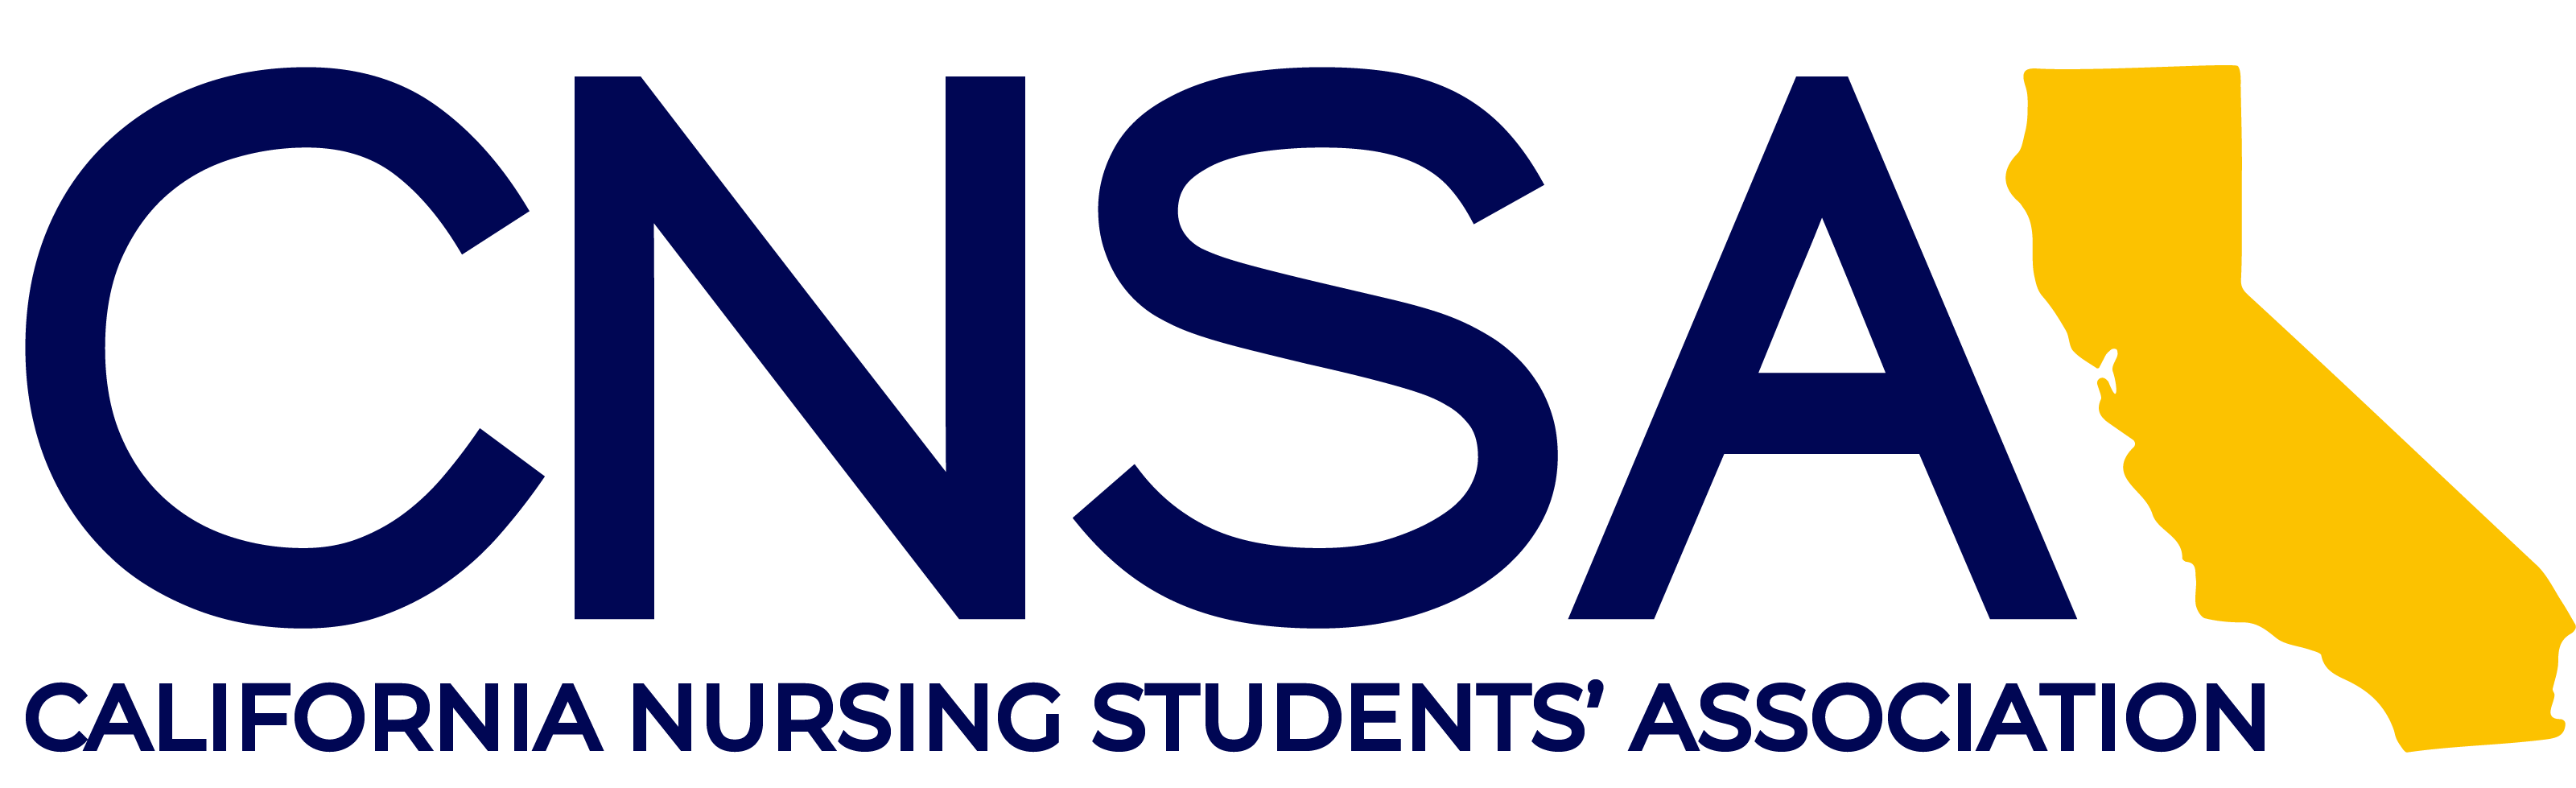 California Nursing Students Association Logo